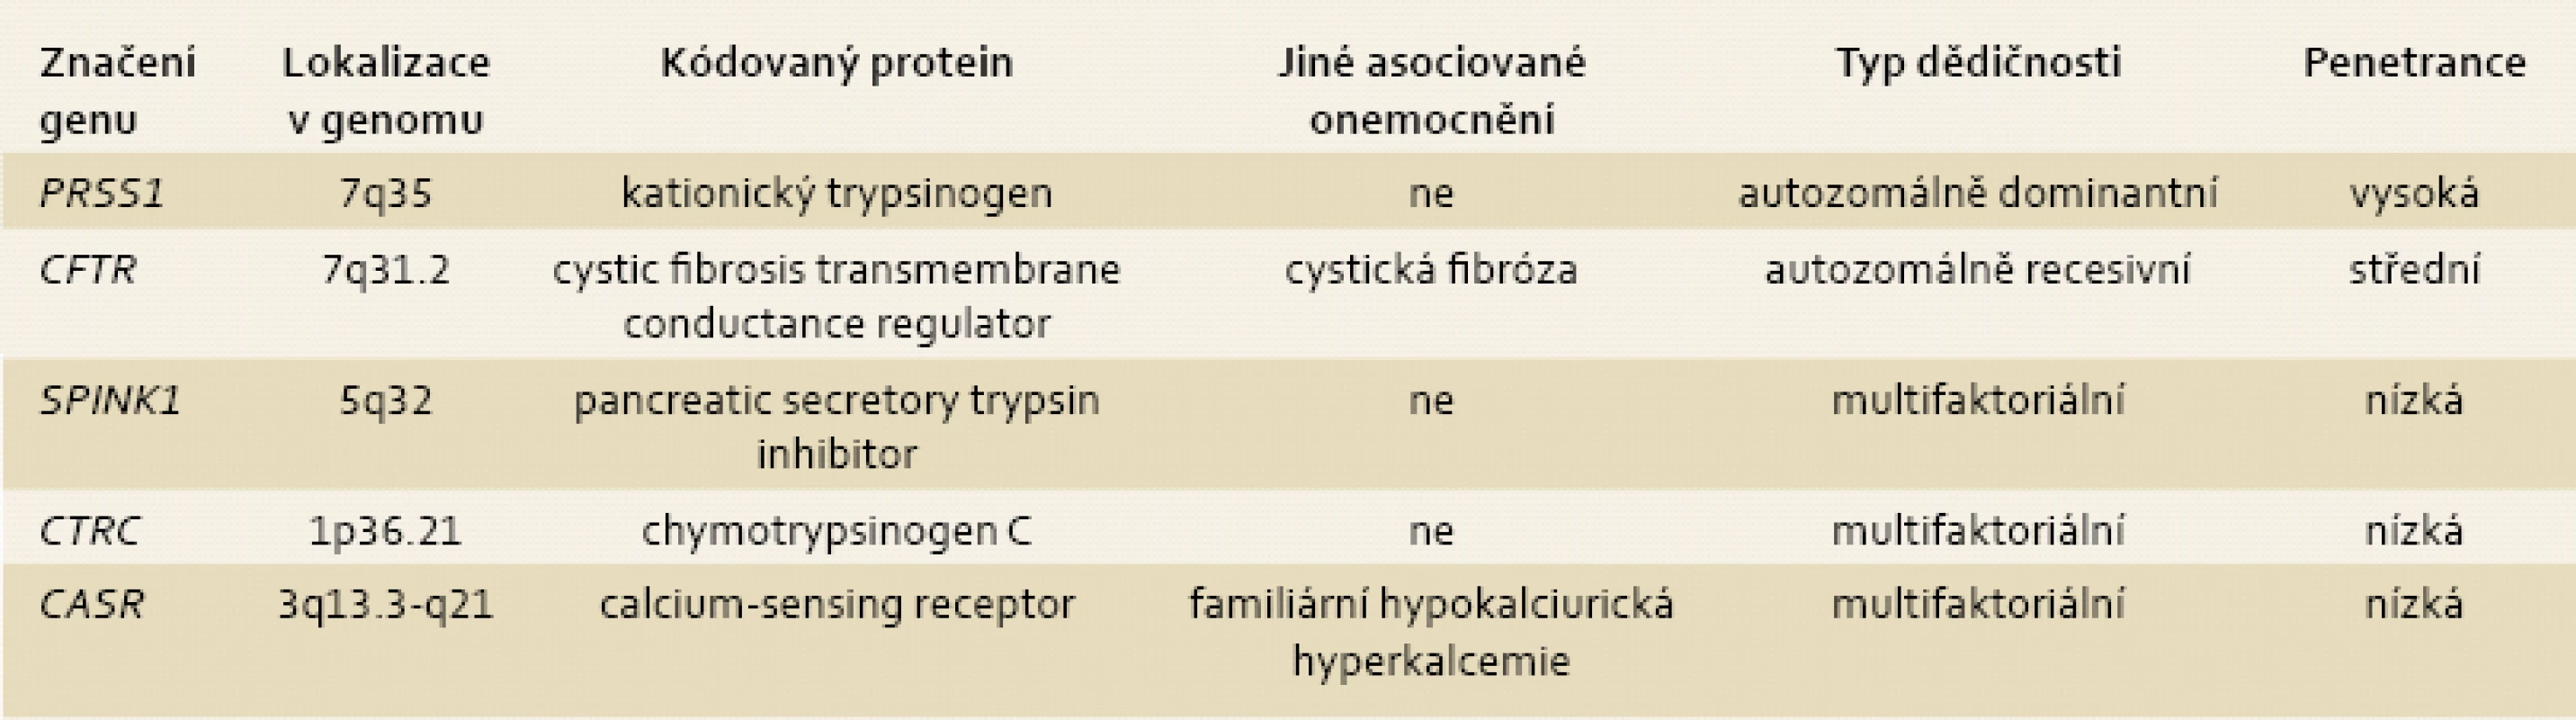 Geny, jejichž mutace se podílejí na rozvoji chronické pankreatitidy.
Tab. 2. Genes associated with chronic pancreatitis.
